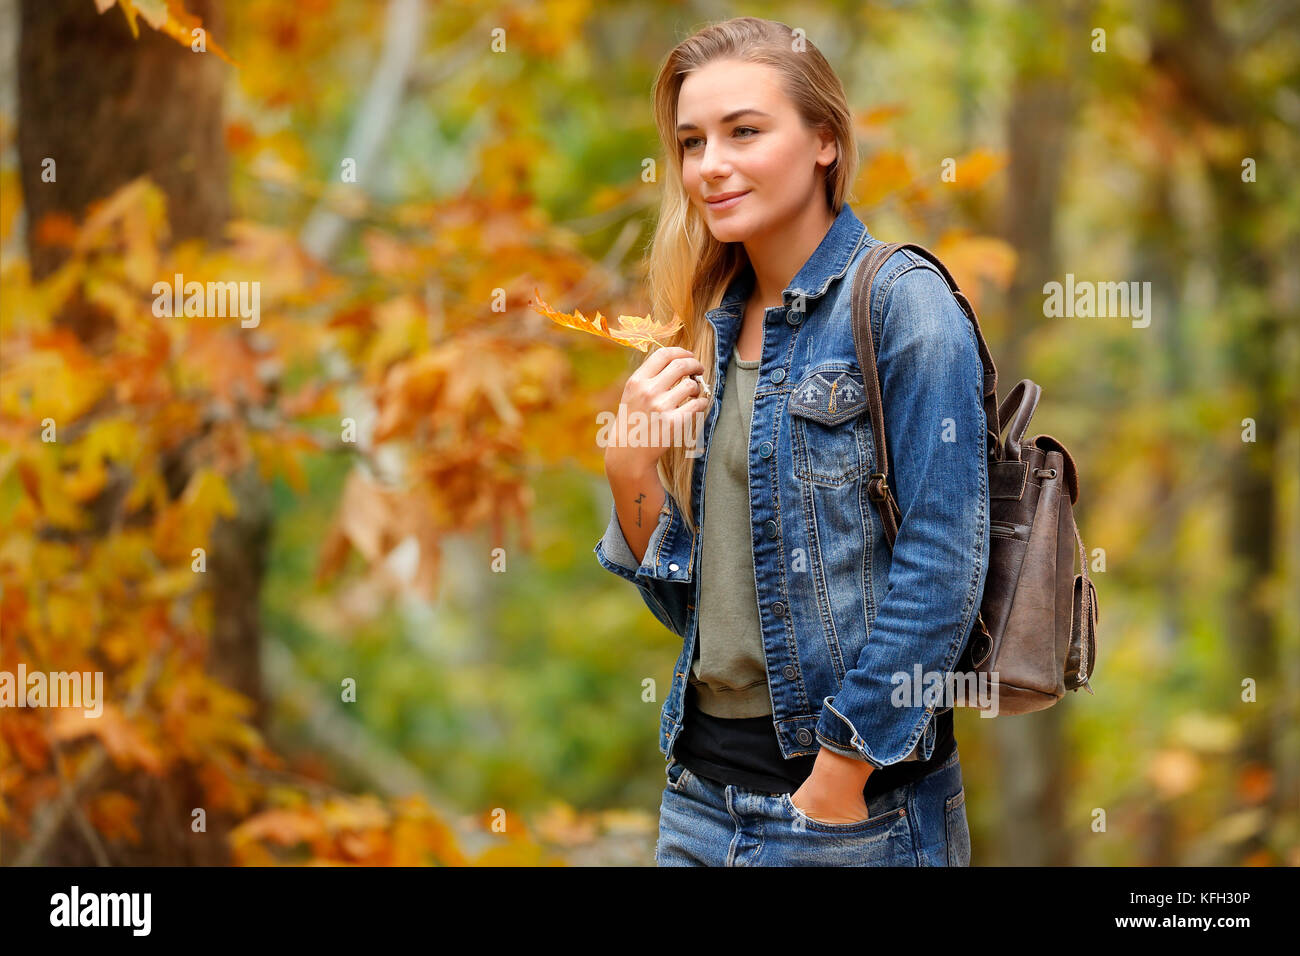 Schöne Frau Wandern im Herbst park mit trockenen Baum Blatt in der Hand, fallen Wetter genießen. Stockfoto